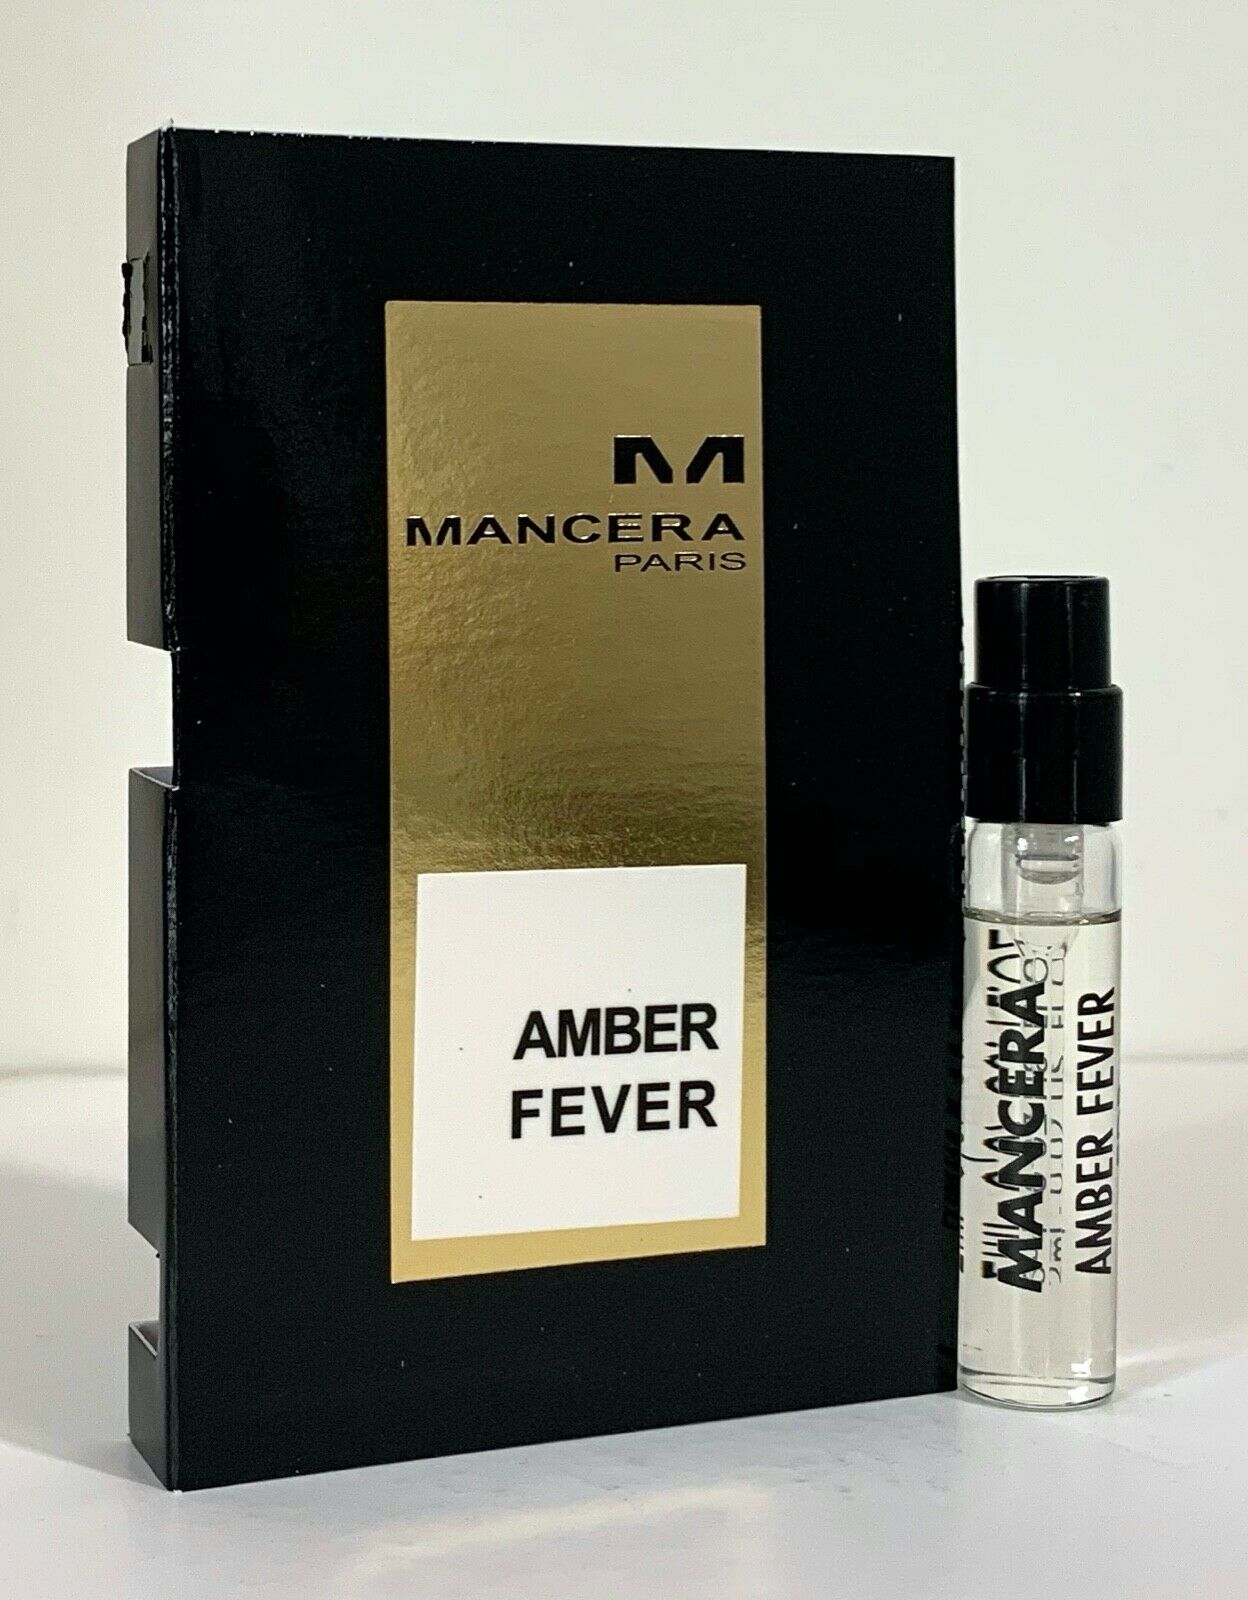 mancera Amber Fever offisiell duftprøve 2ml 0.06 fl. oz., Mancera Amber Fever 2 ml 0.06 fl. oz. offisiell parfyme